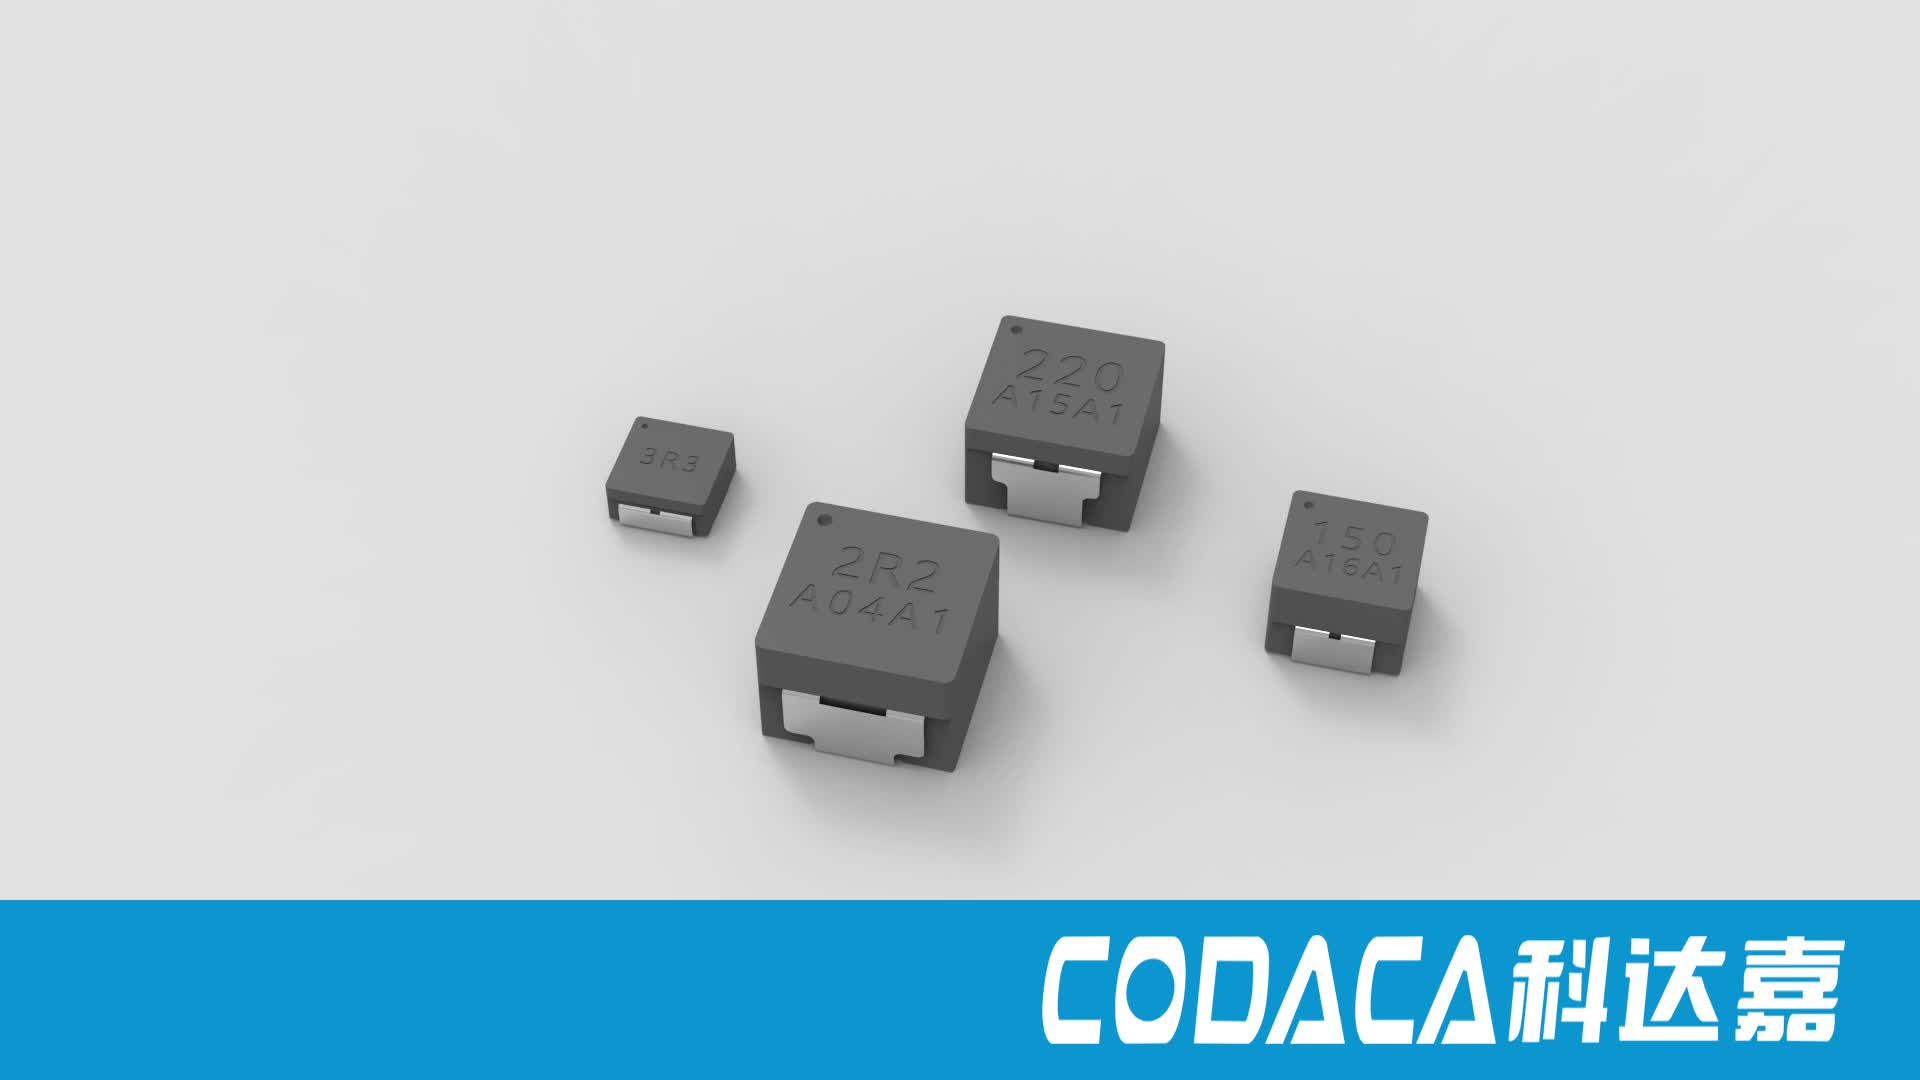 小尺寸一体成型功率电感 VSHB04 05 06#DCDC #电路设计 #电源设计 #电感 